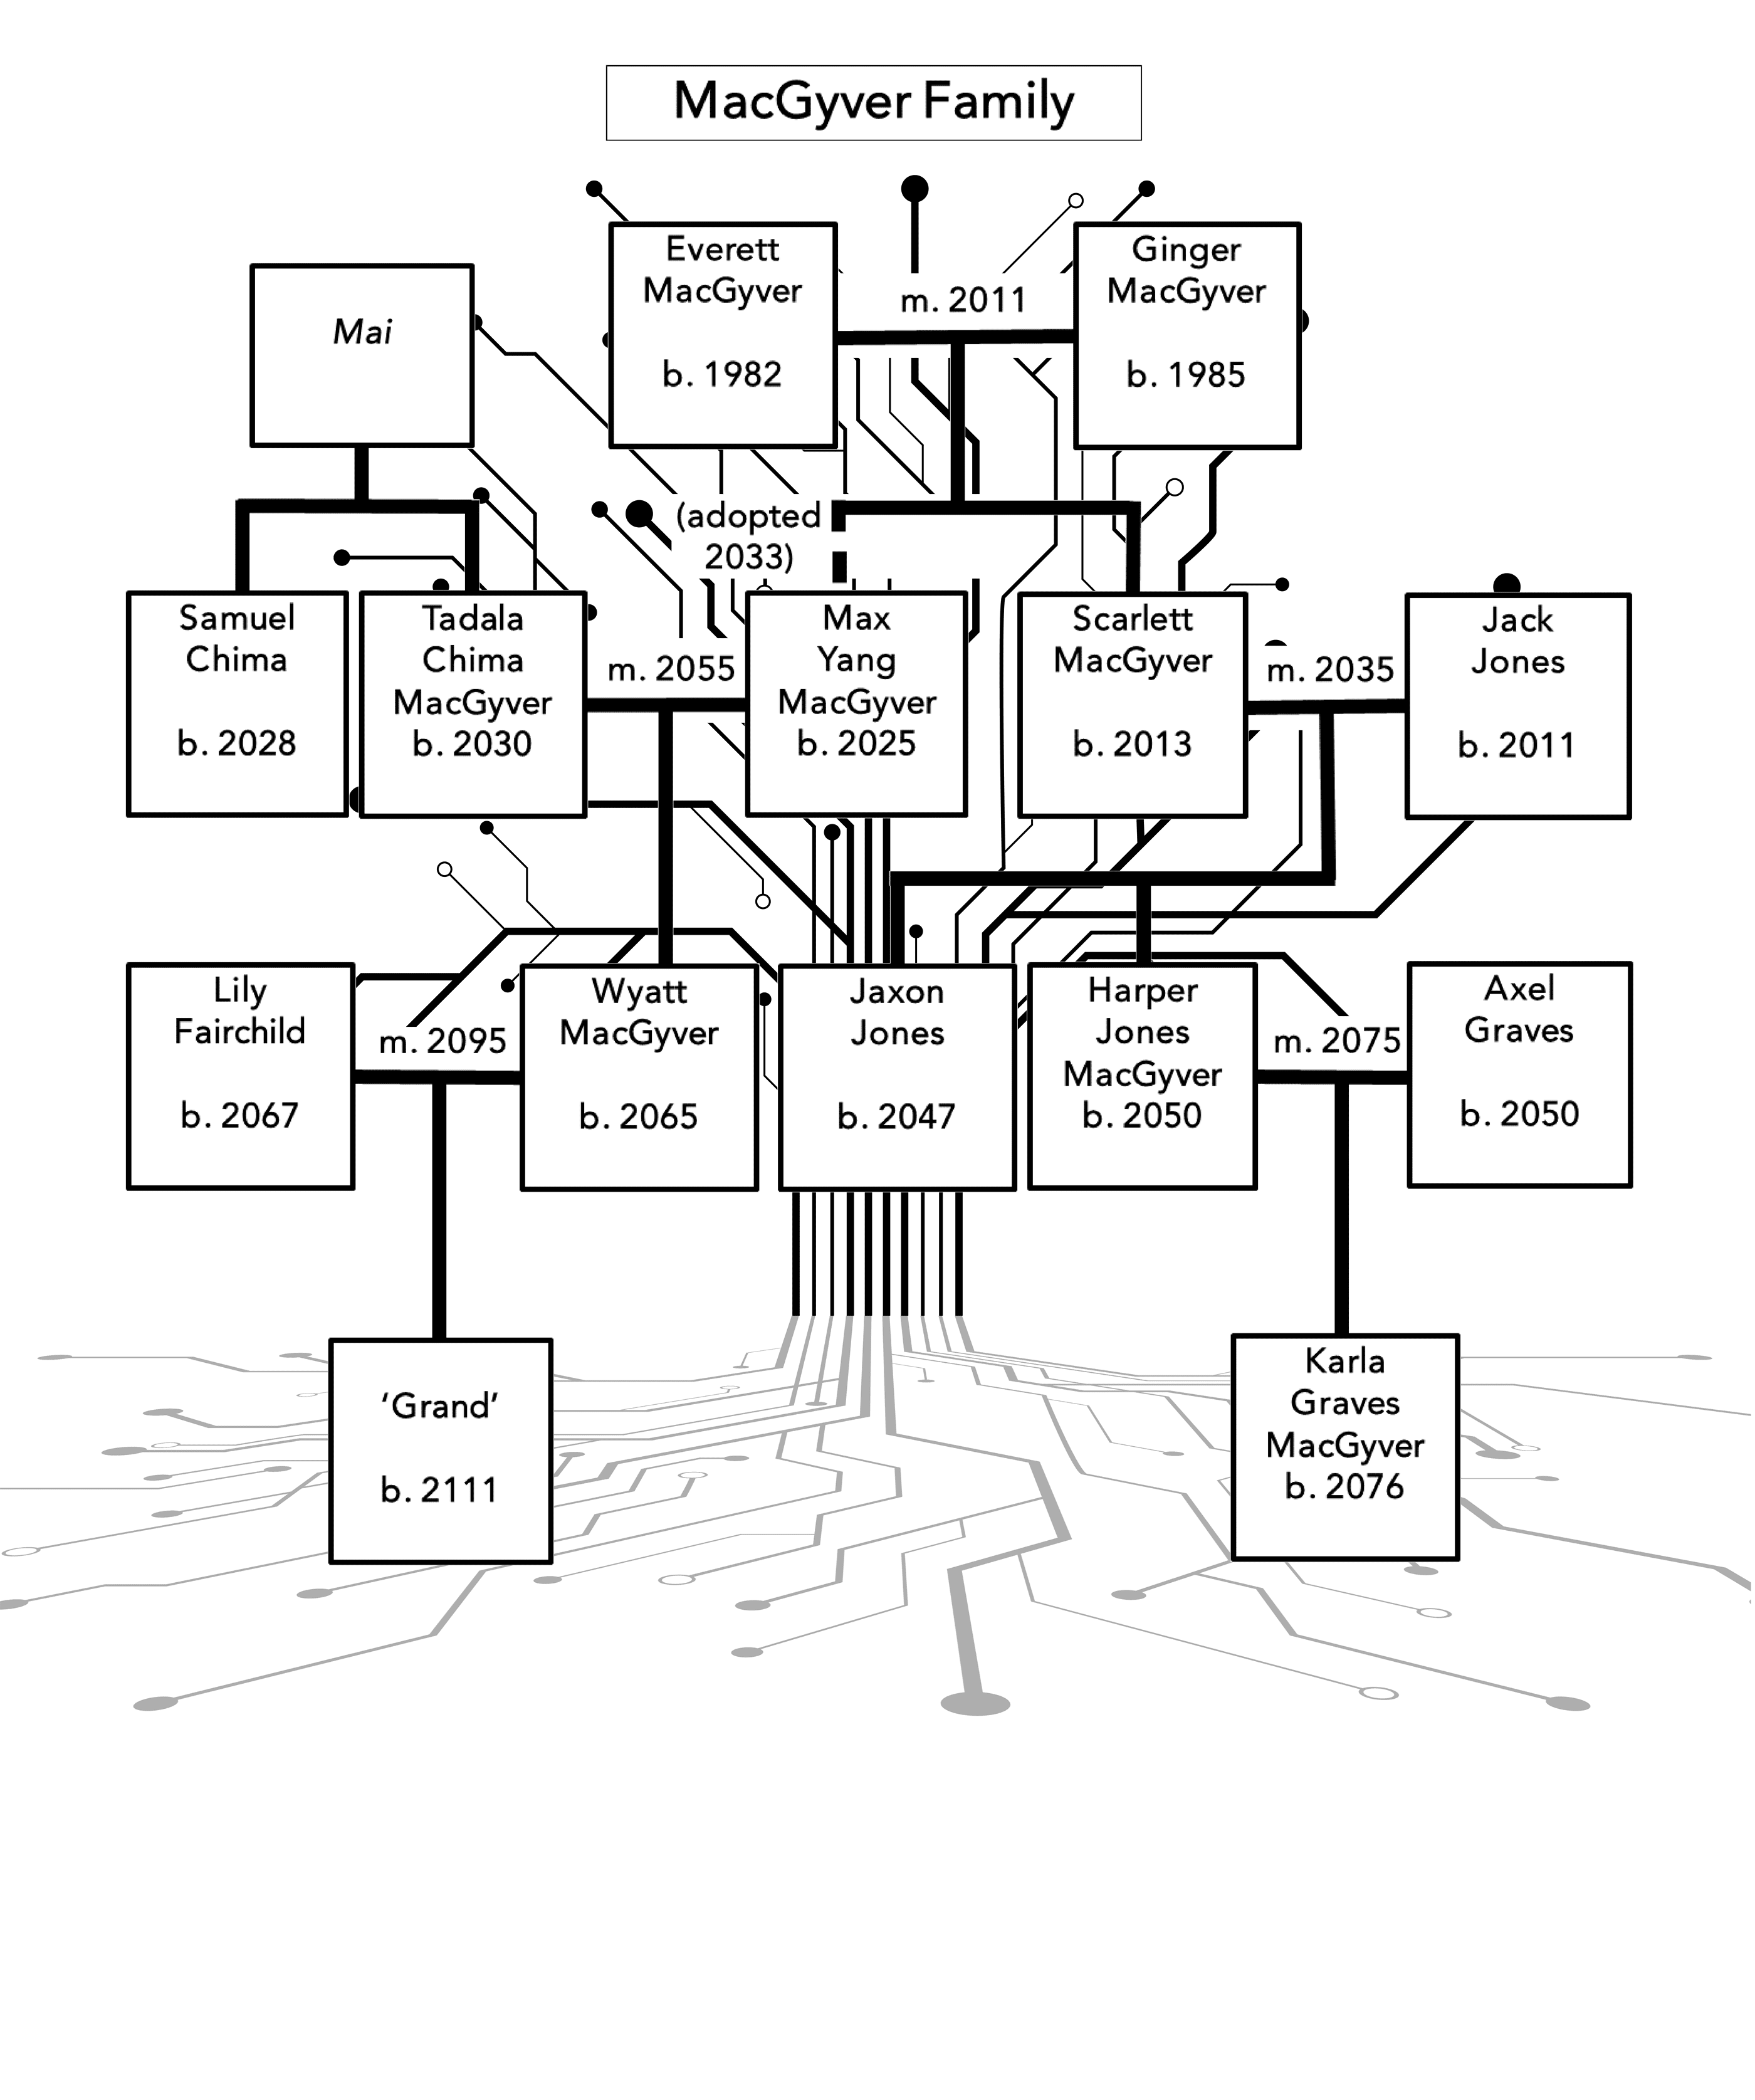 MacGyver Family Tree